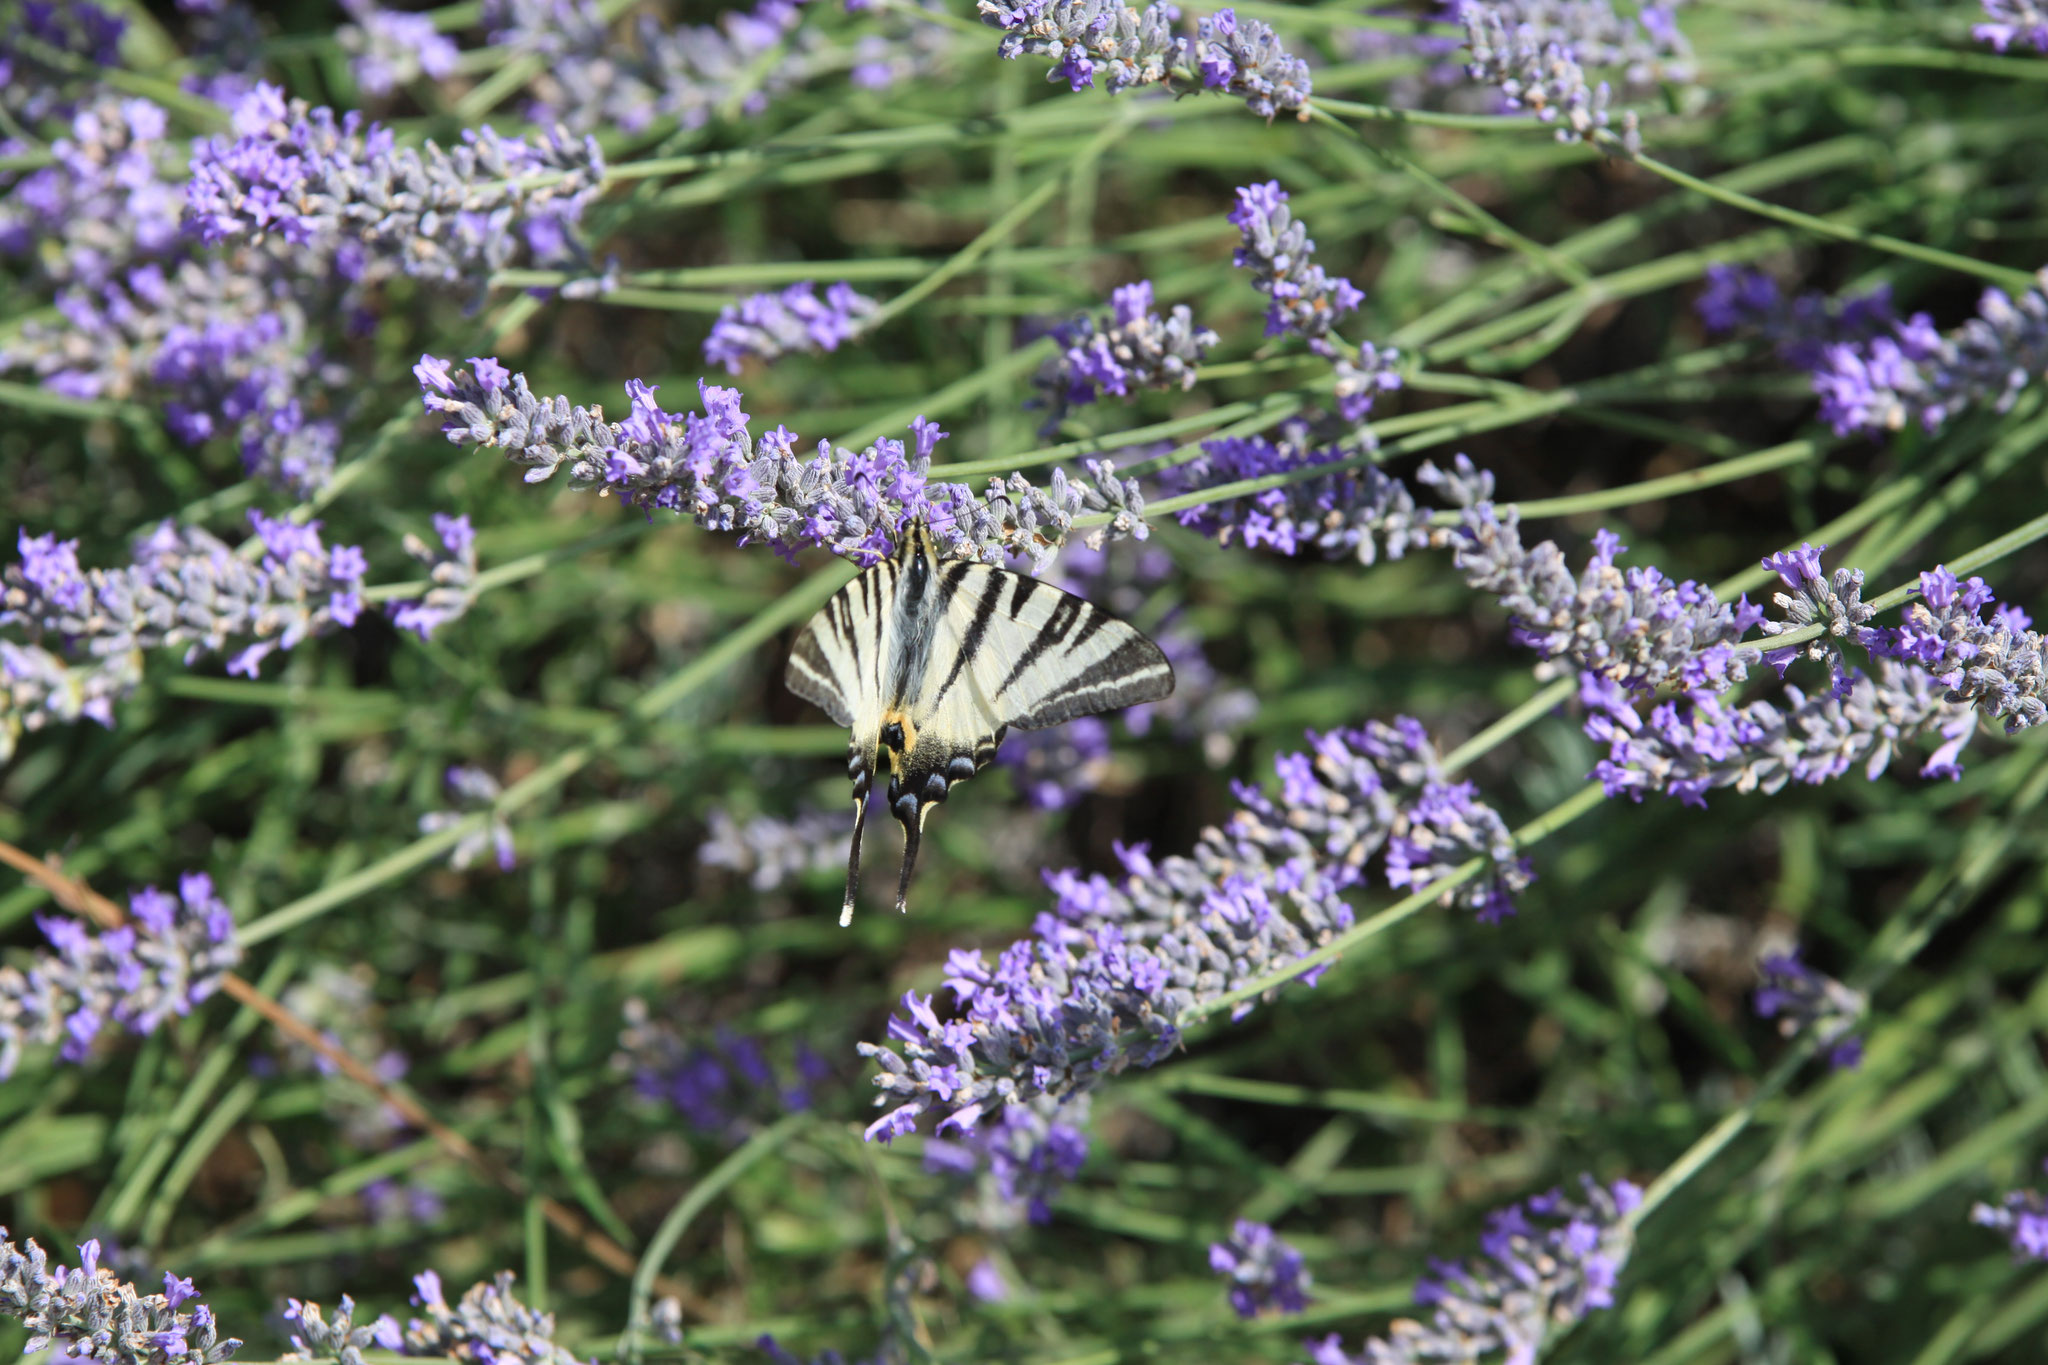  Schmetterling in Lavendel am Pool